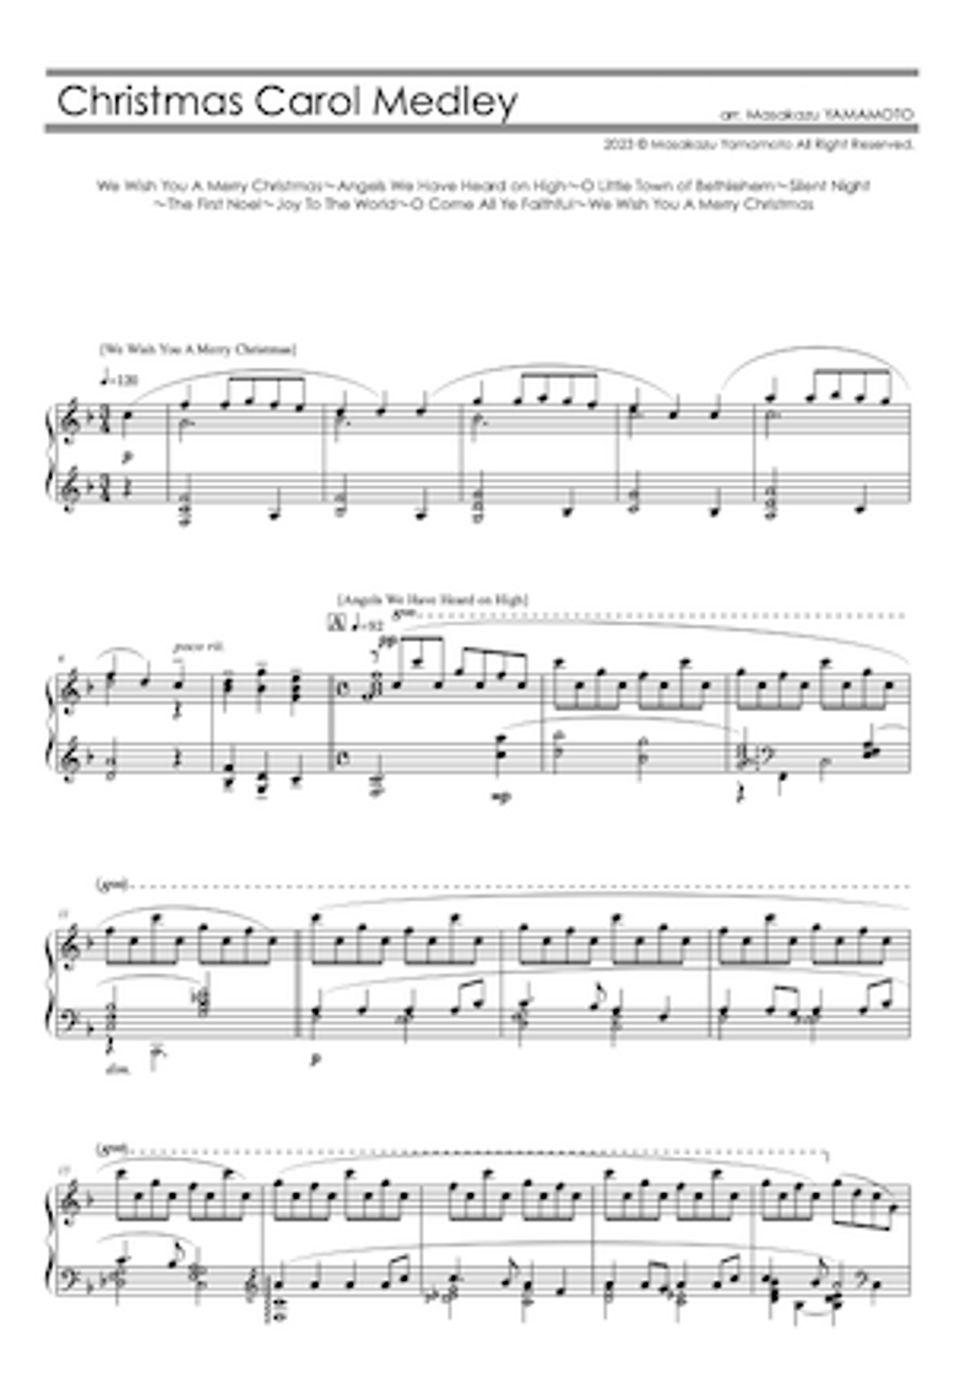 讃美歌 - クリスマスキャロルメドレー (ピアノ上級／メドレー) by 山本雅一